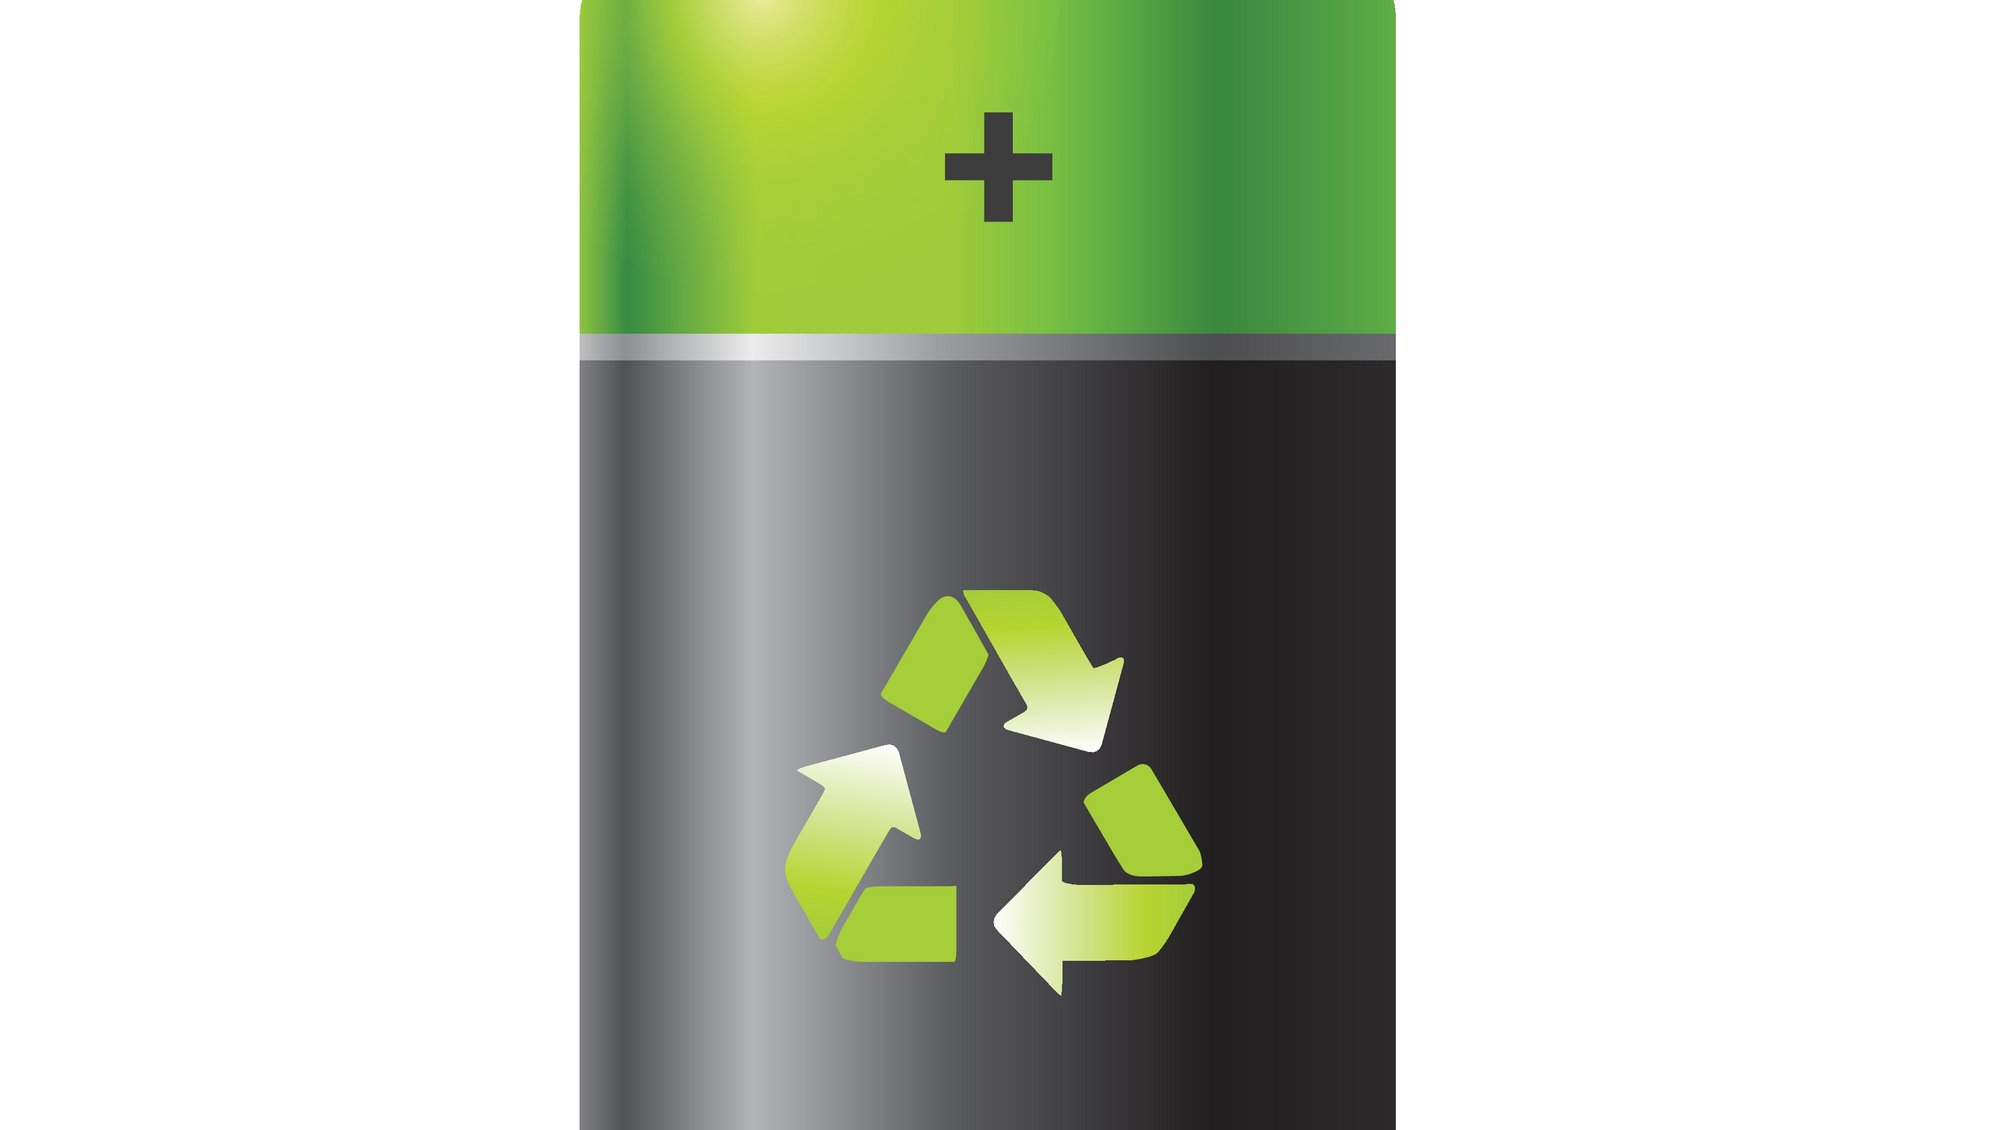 Er vores genopladelige Li-ion batterier gode nok til fremtidens behov? Fremstilles de af bæredygtige ressourcer, og kan ressourcernes genanvendes? Hør om hvordan batteri-forskning kan hjælpe os med at realisere den grønne omstilling. Foto: Colourbox